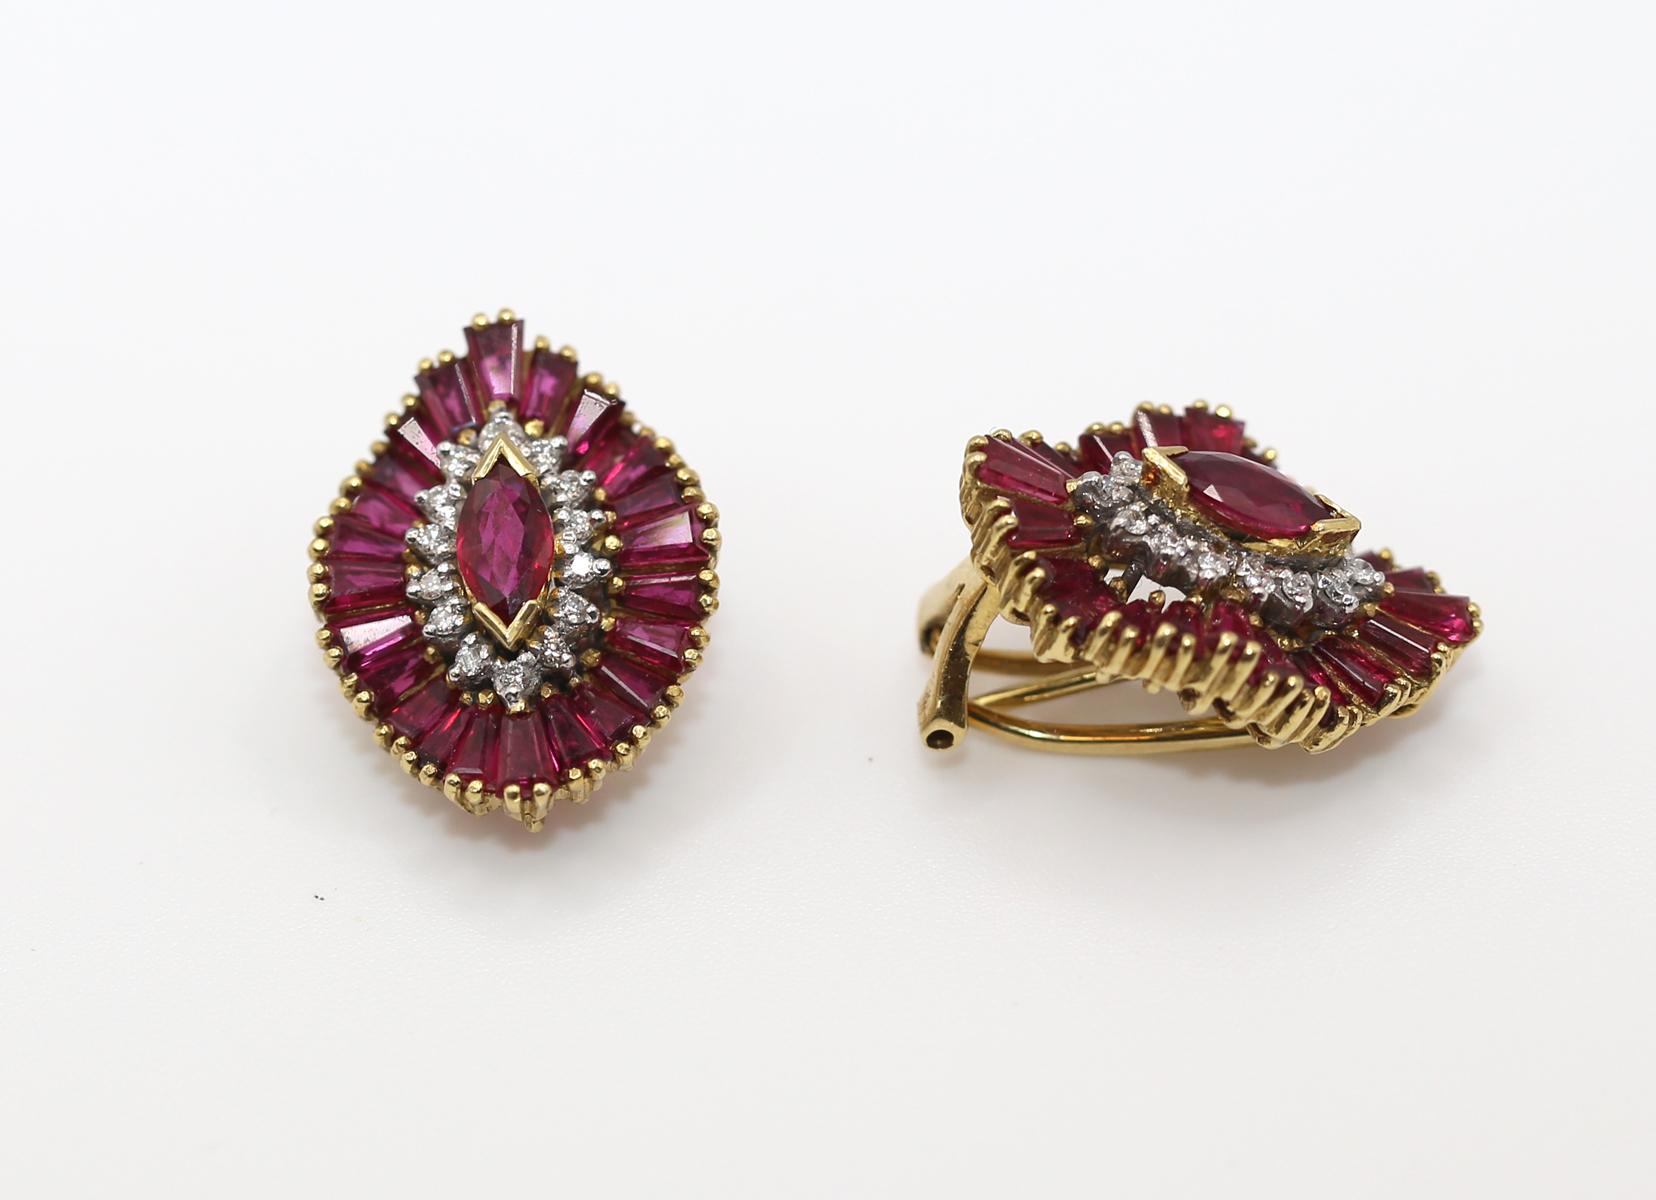 Boucles d'oreilles en or jaune rubis diamants. Créé vers 1970. 18 carats.

Une belle combinaison de pierres immaculées et de l'habileté exceptionnelle du joaillier. Les rubis sont sertis selon une technique 